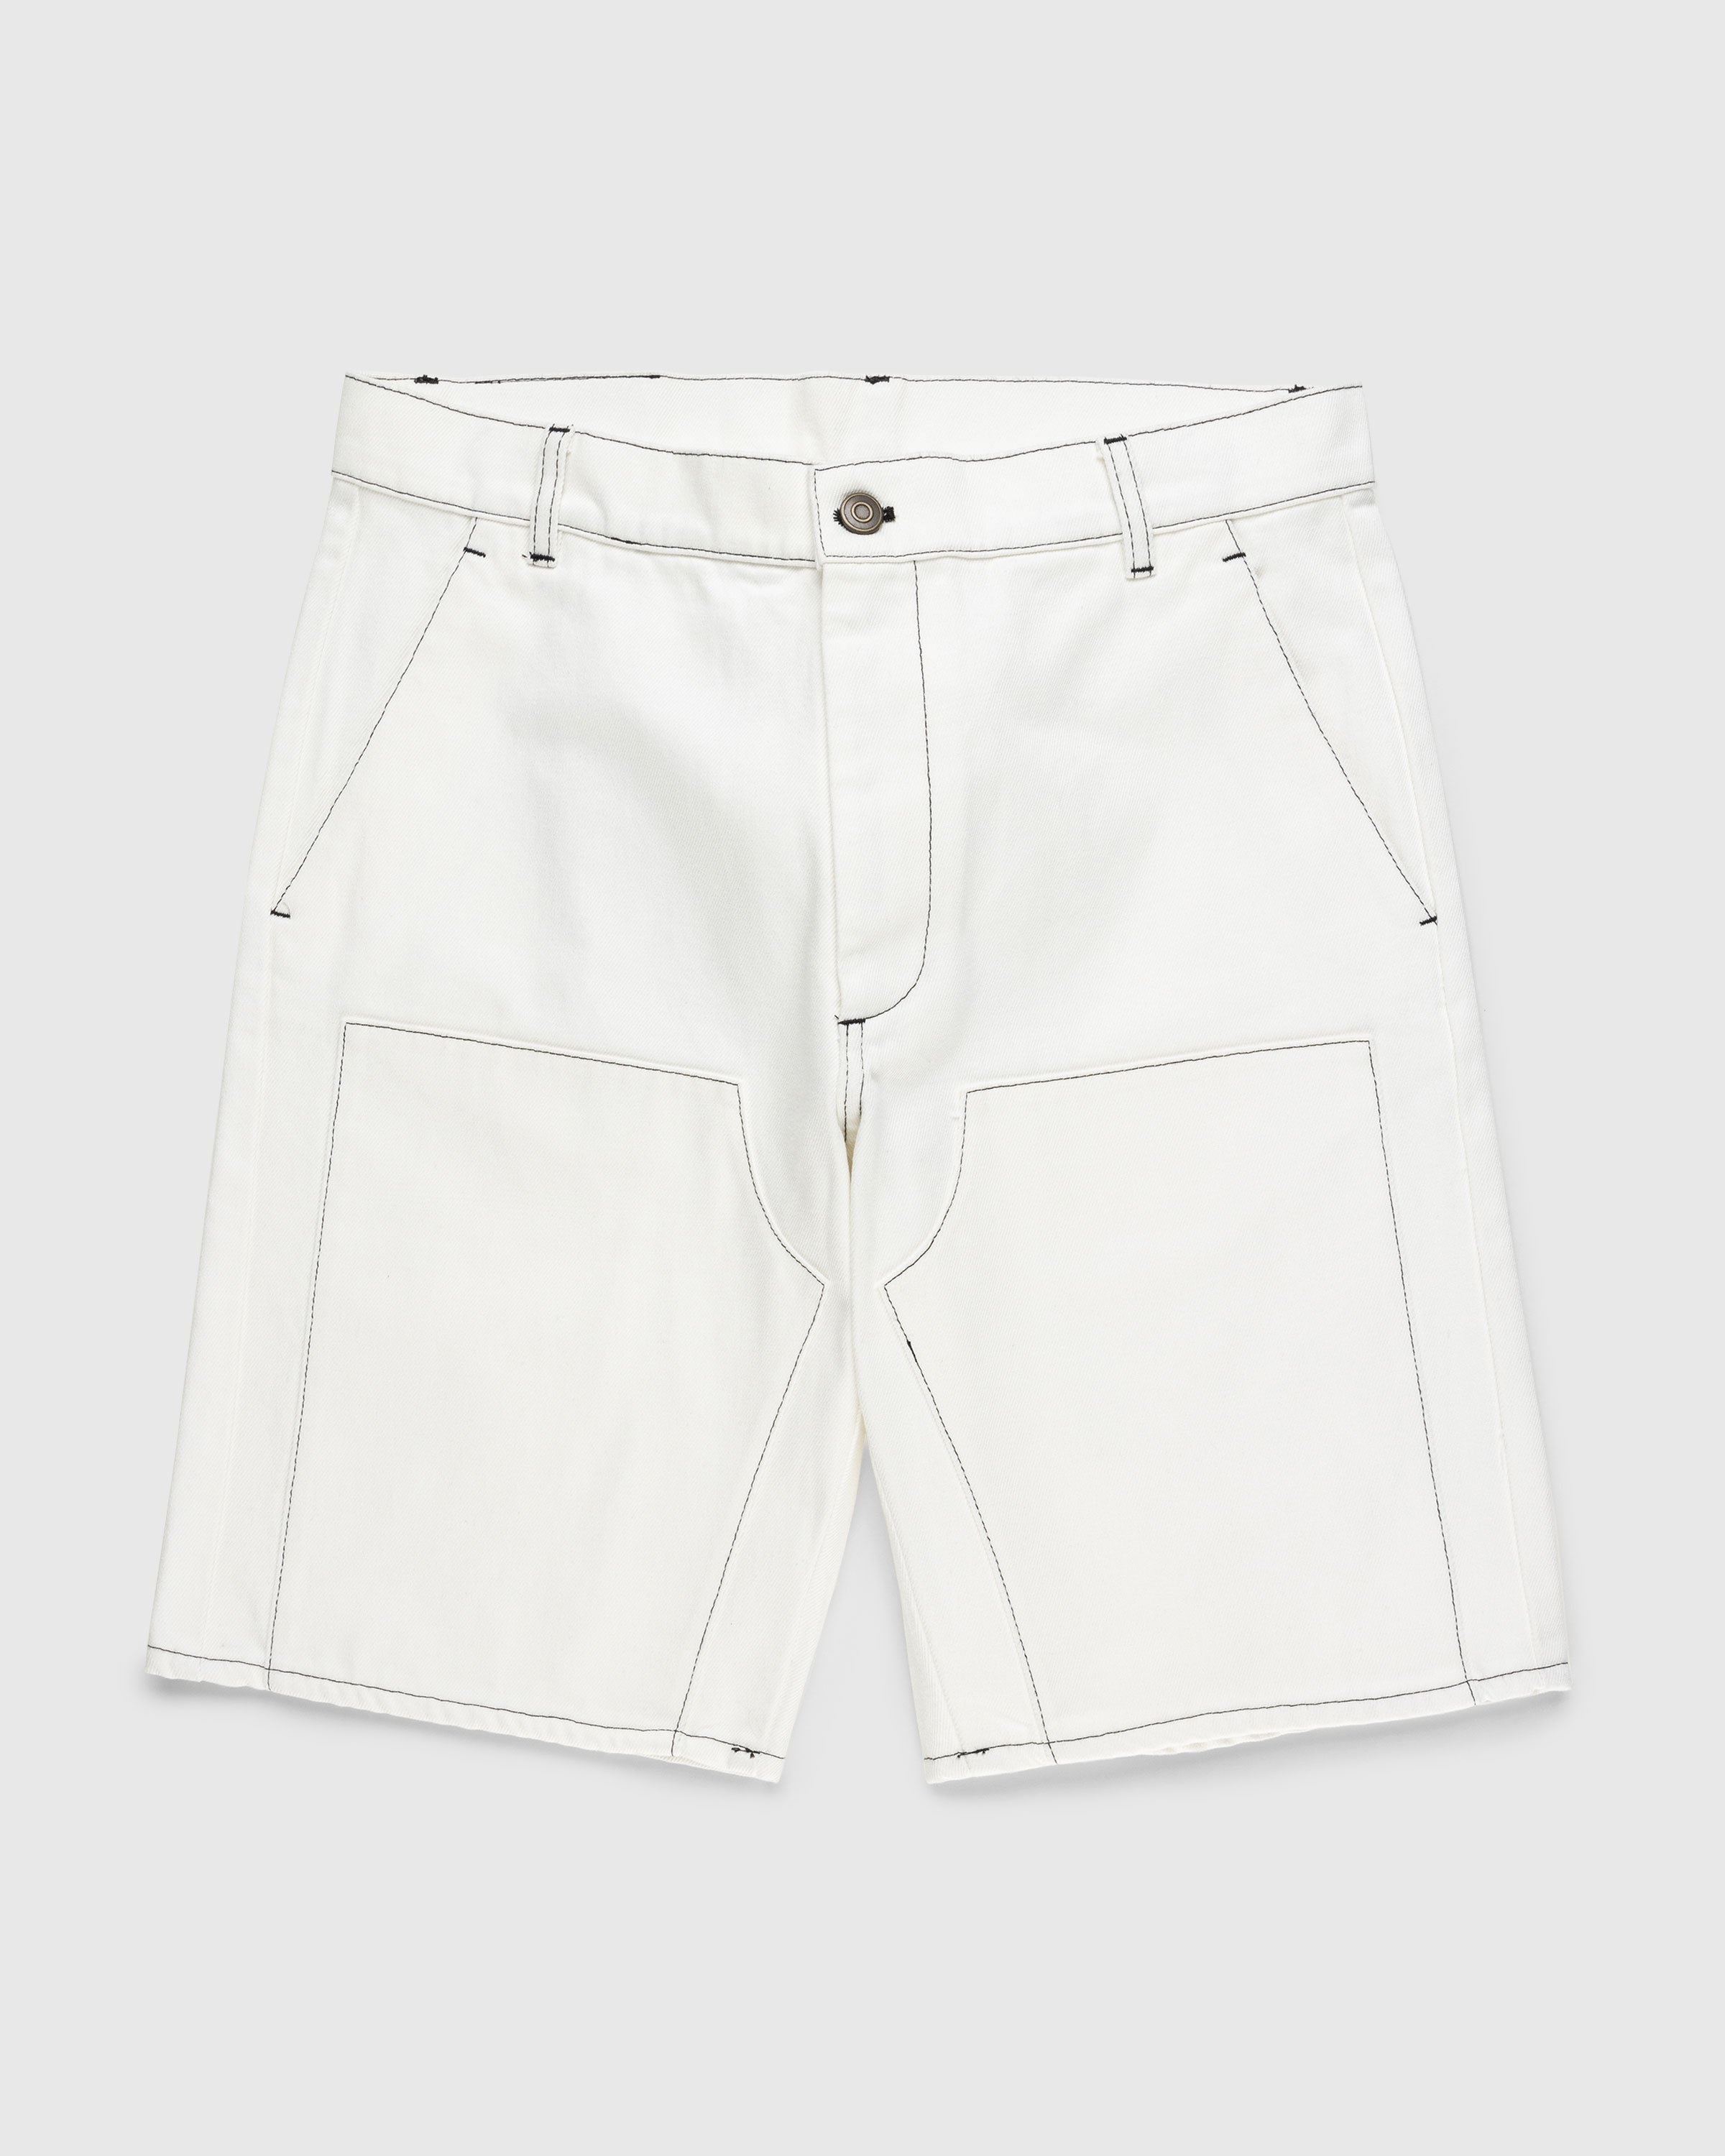 Winnie New York – Denim Shorts Ivory | Highsnobiety Shop